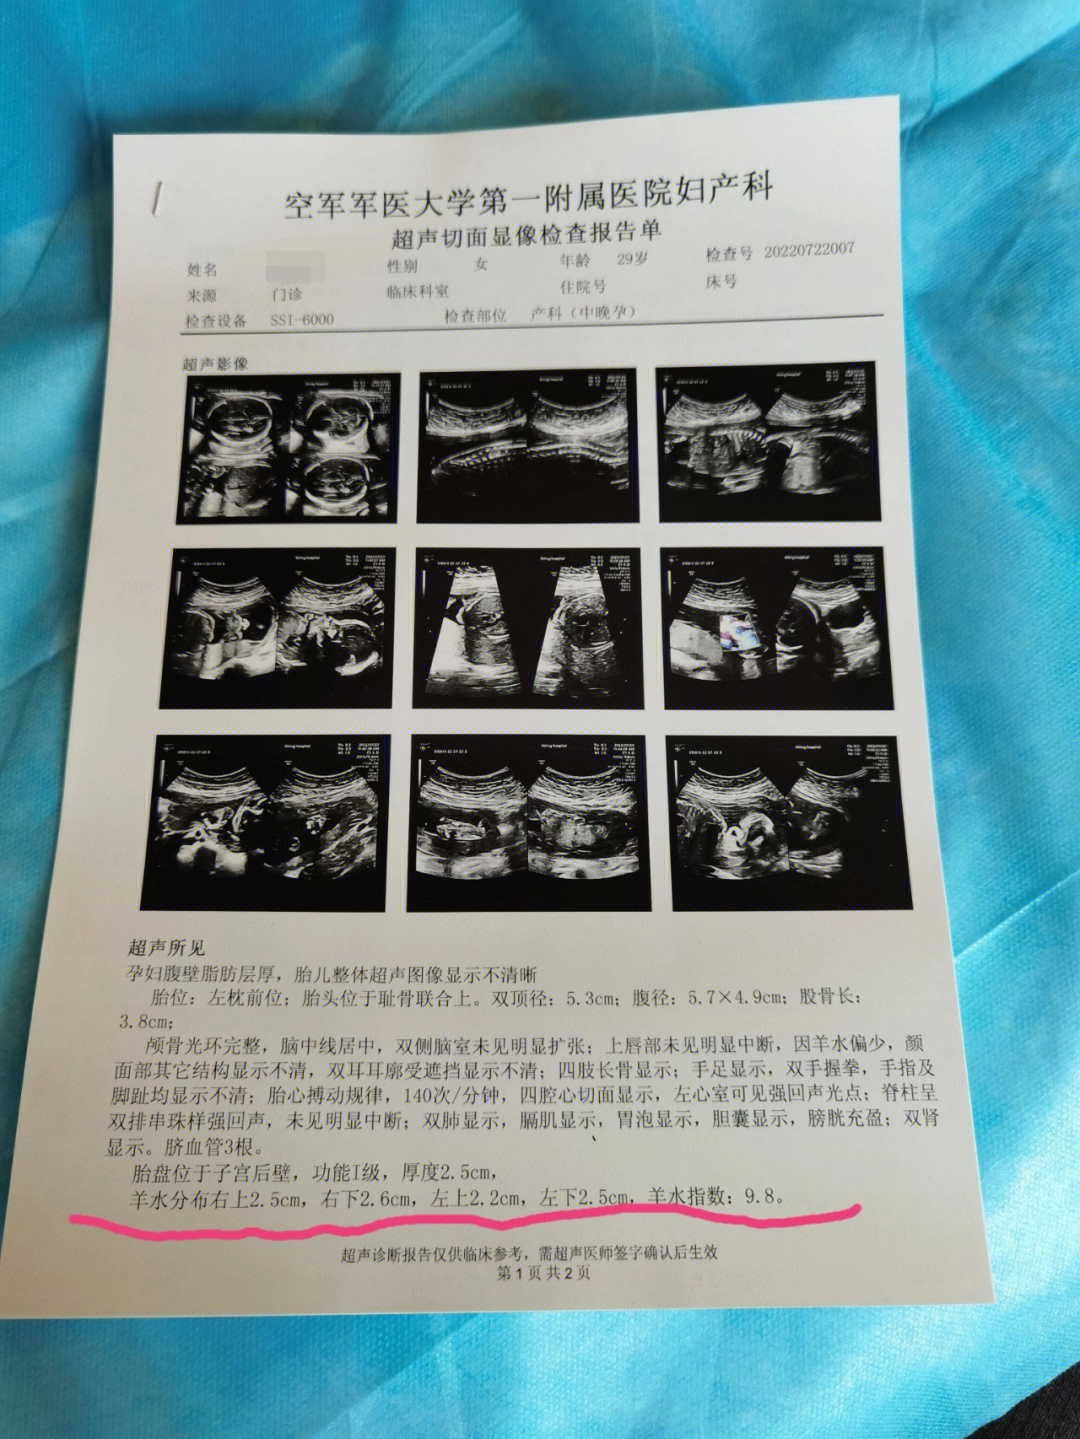 西京医院7月21日做了胎儿心脏彩超,左心室有强光点和三尖瓣反流(少量)